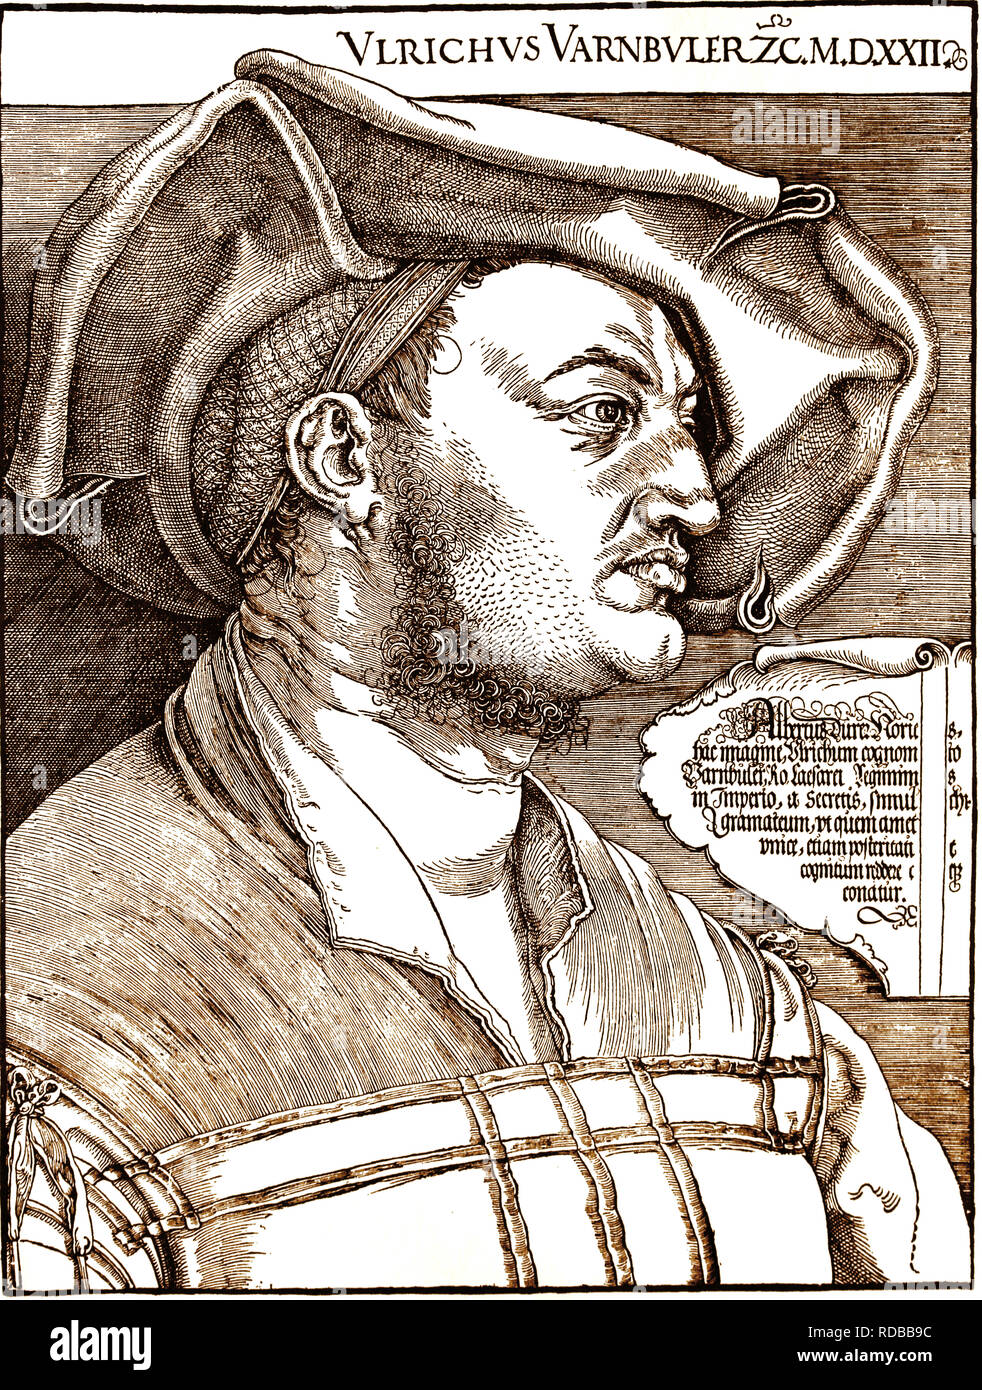 Ulrich Varnbuler (1474-1545). Diplomat. Porträt. Kupferstich von Albrecht Dürer (1471-1528). Stockfoto